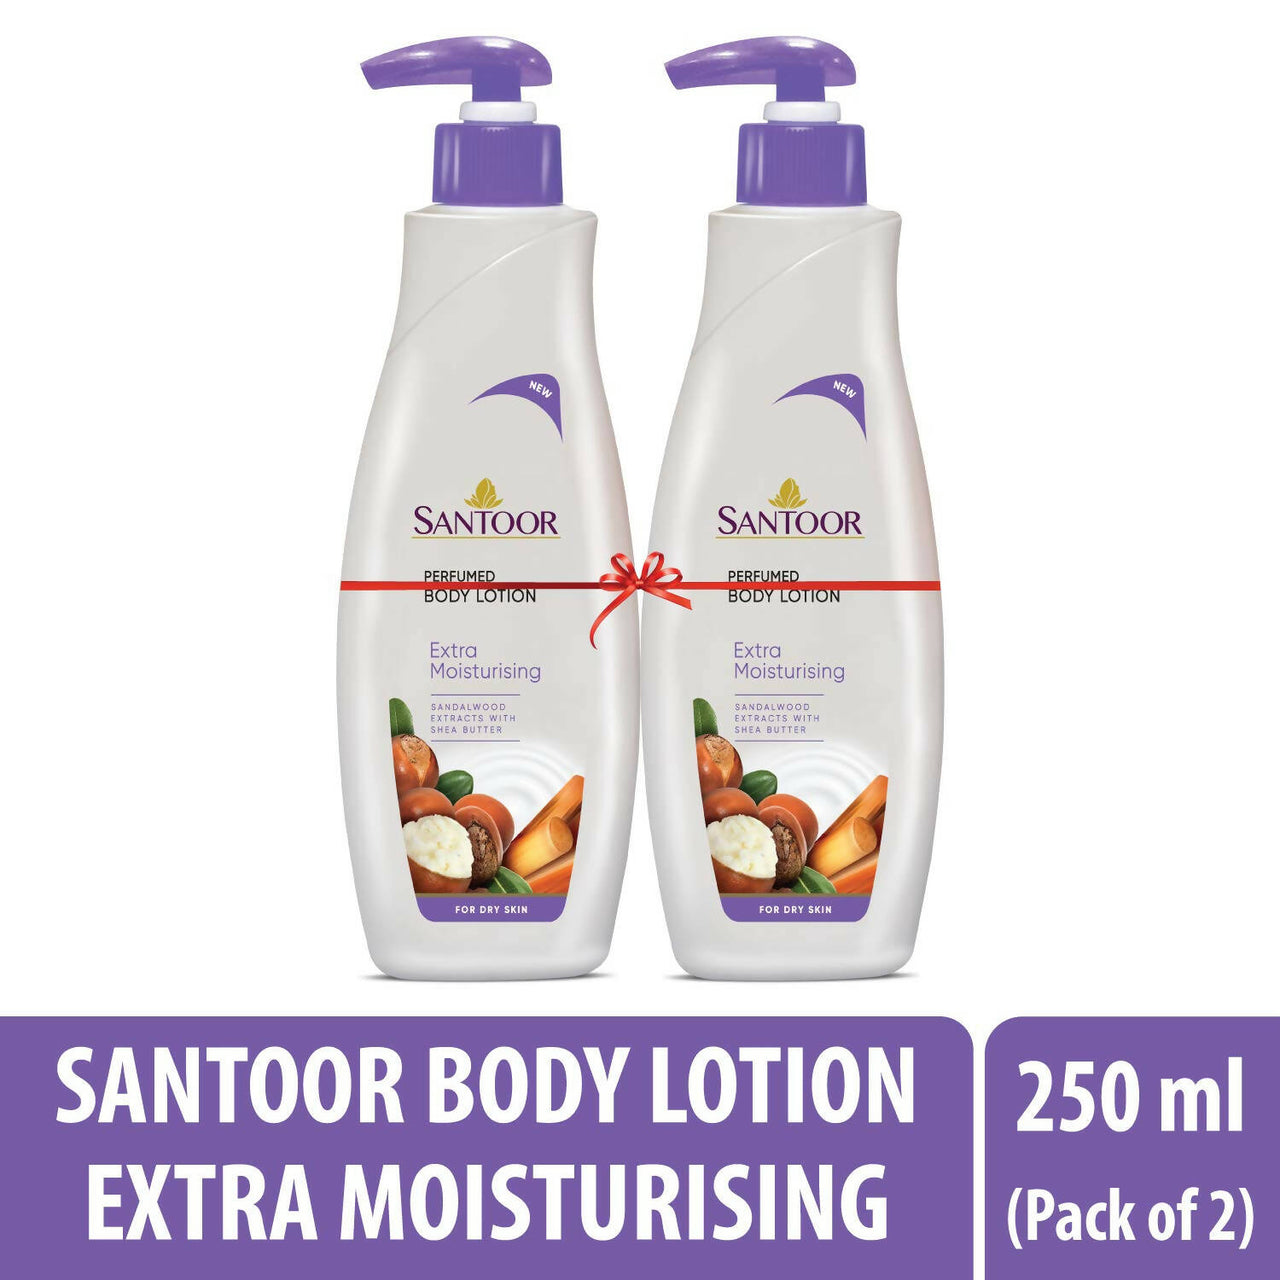 Santoor Perfumed Body Lotion - Distacart